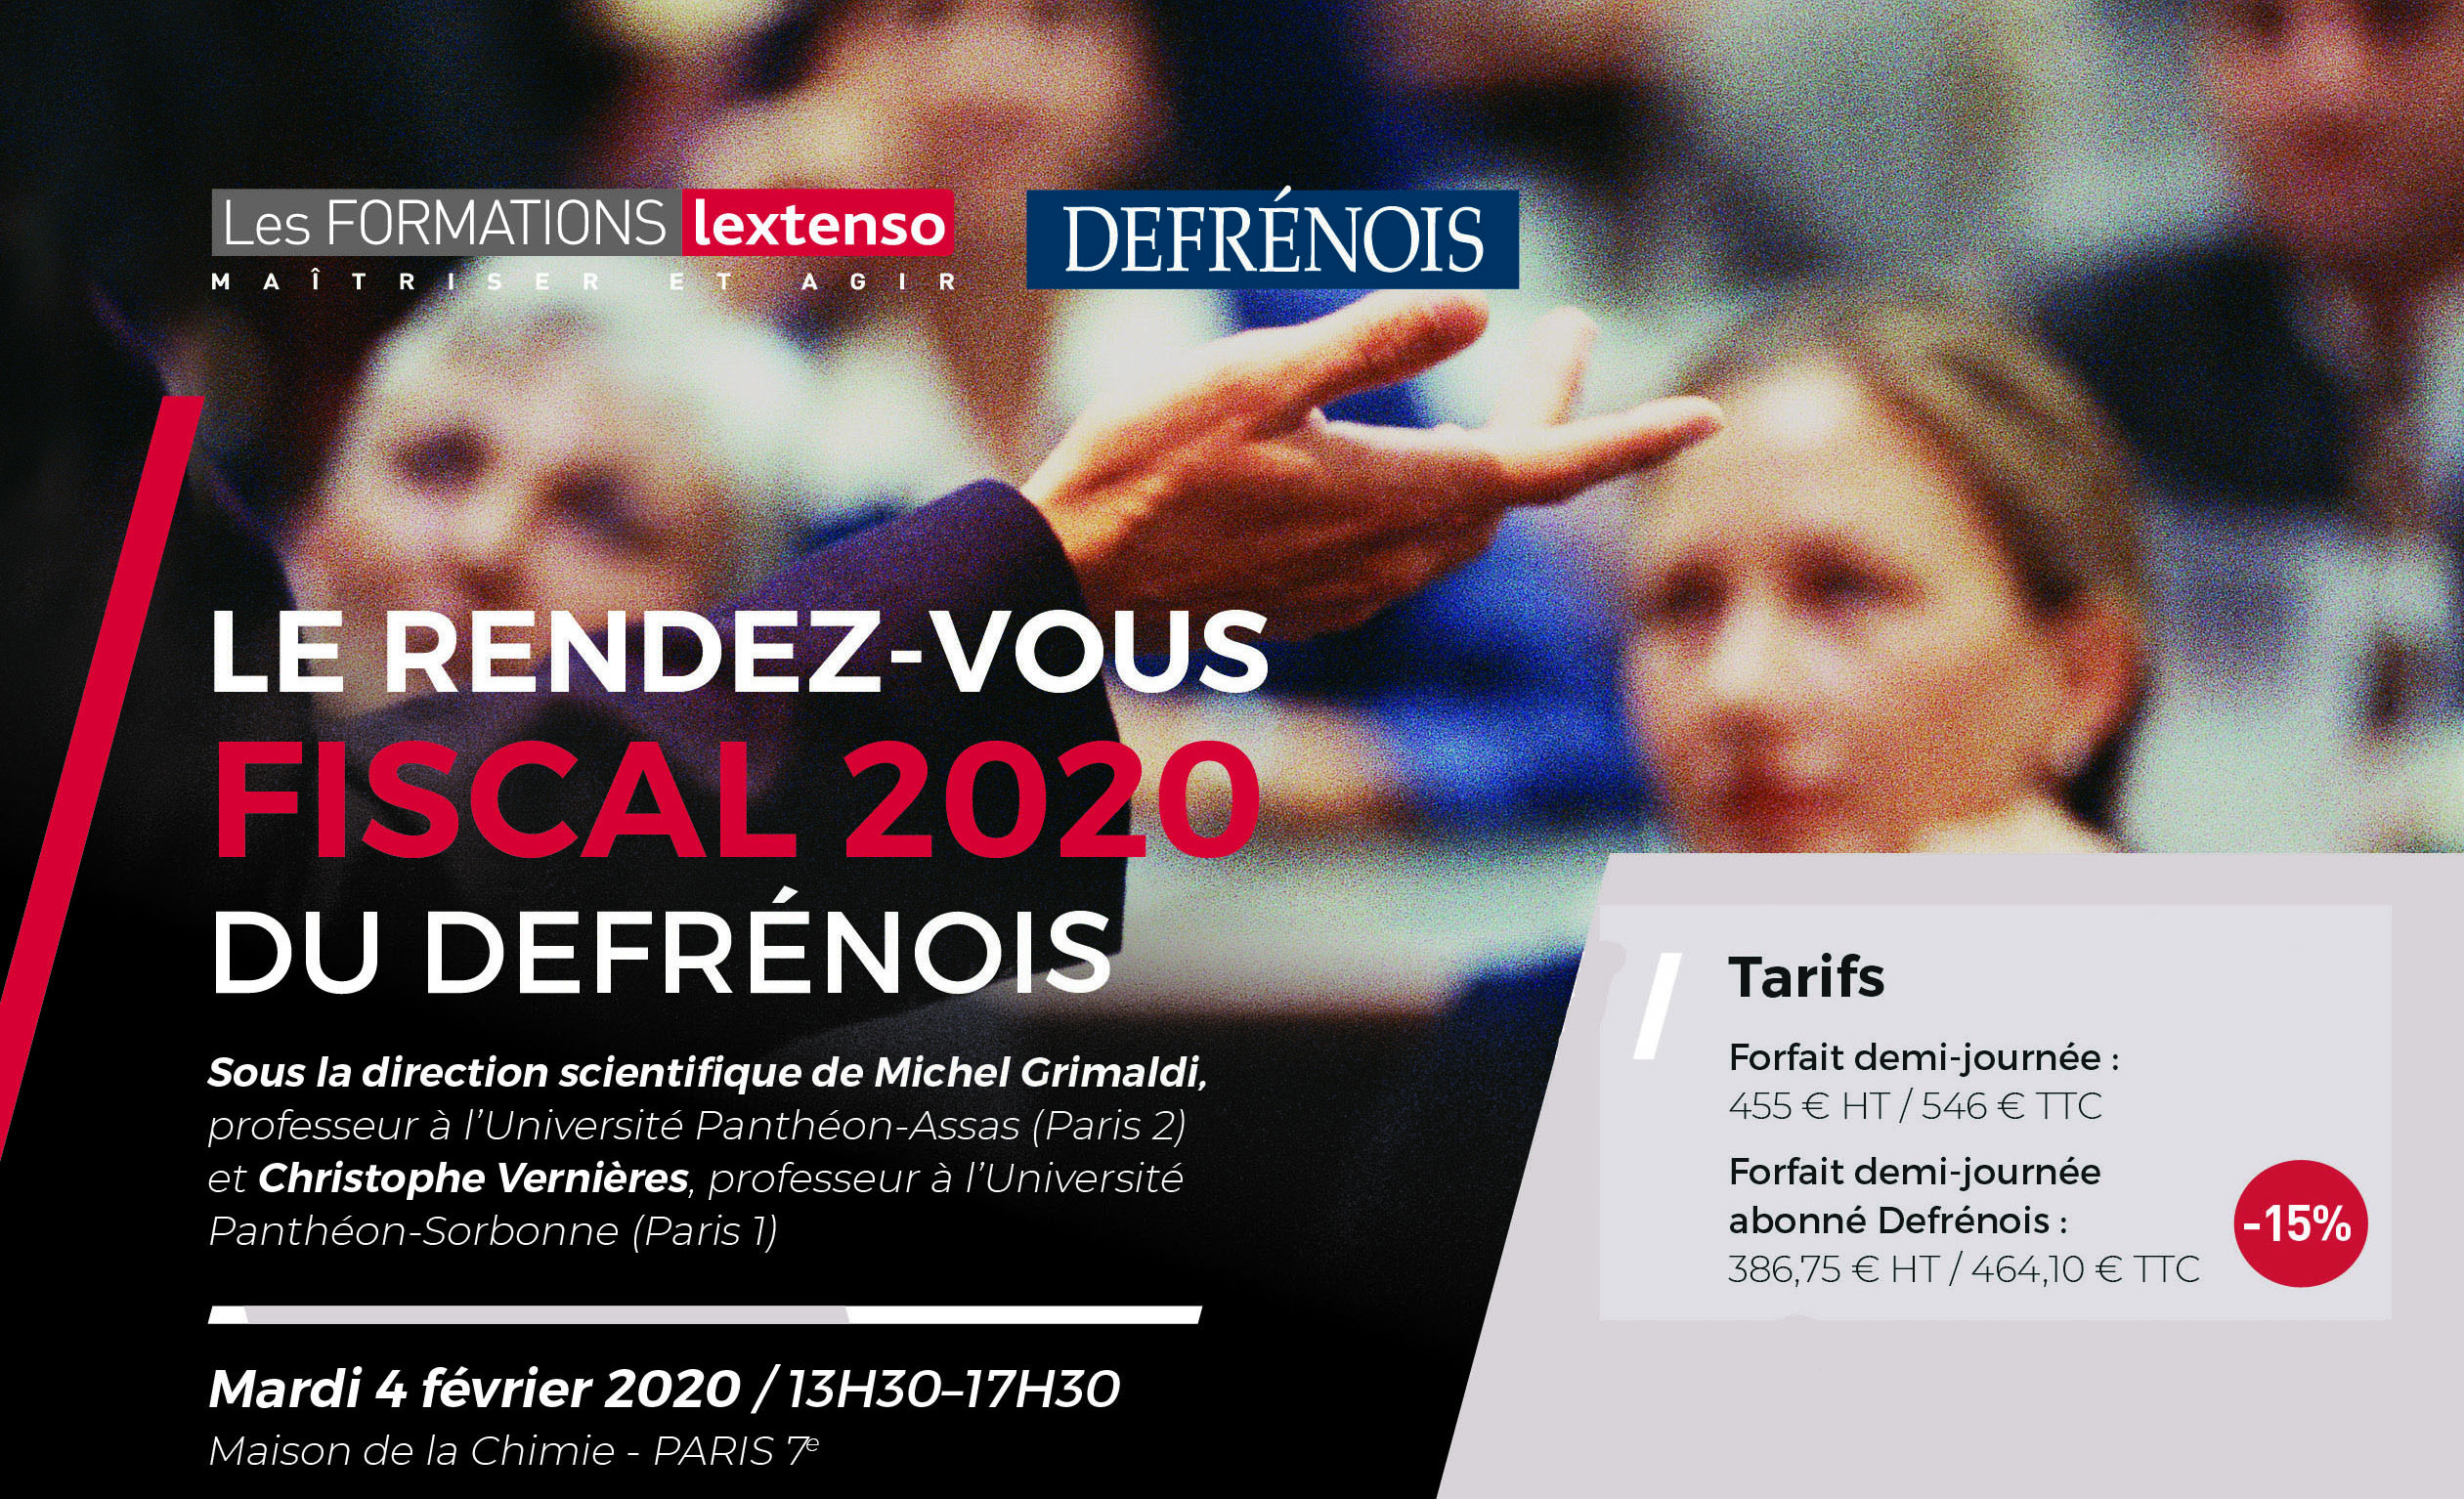 Formation Defrénois Rendez-vous fiscal 2020